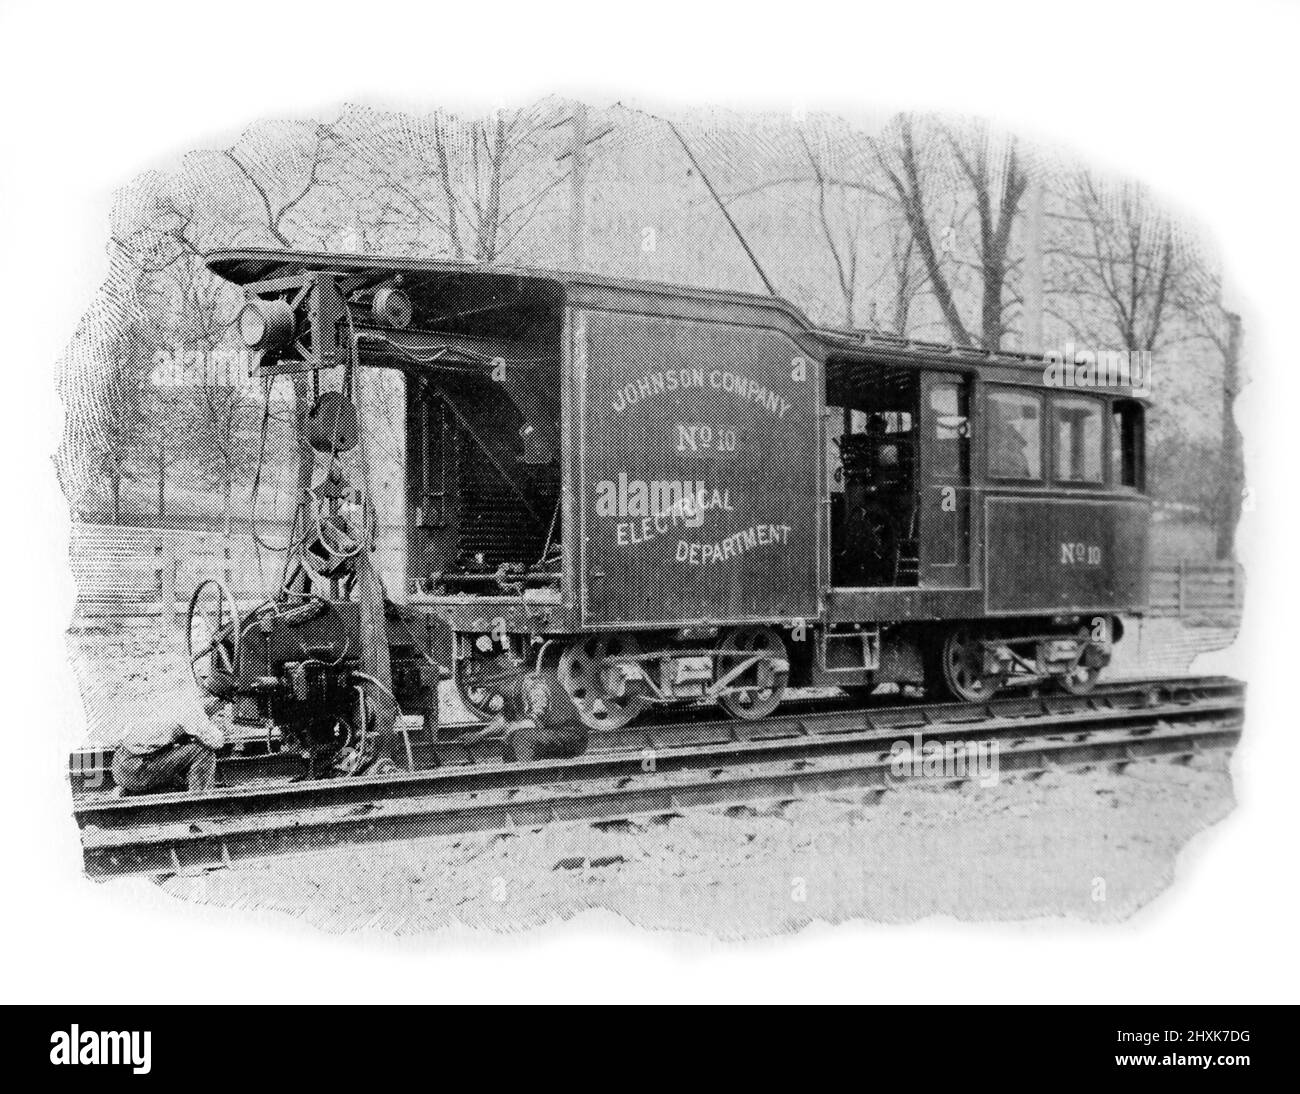 Une voiture de soudage électrique appartenant à la compagnie Johnson. Photographie en noir et blanc prise vers 1890s Banque D'Images